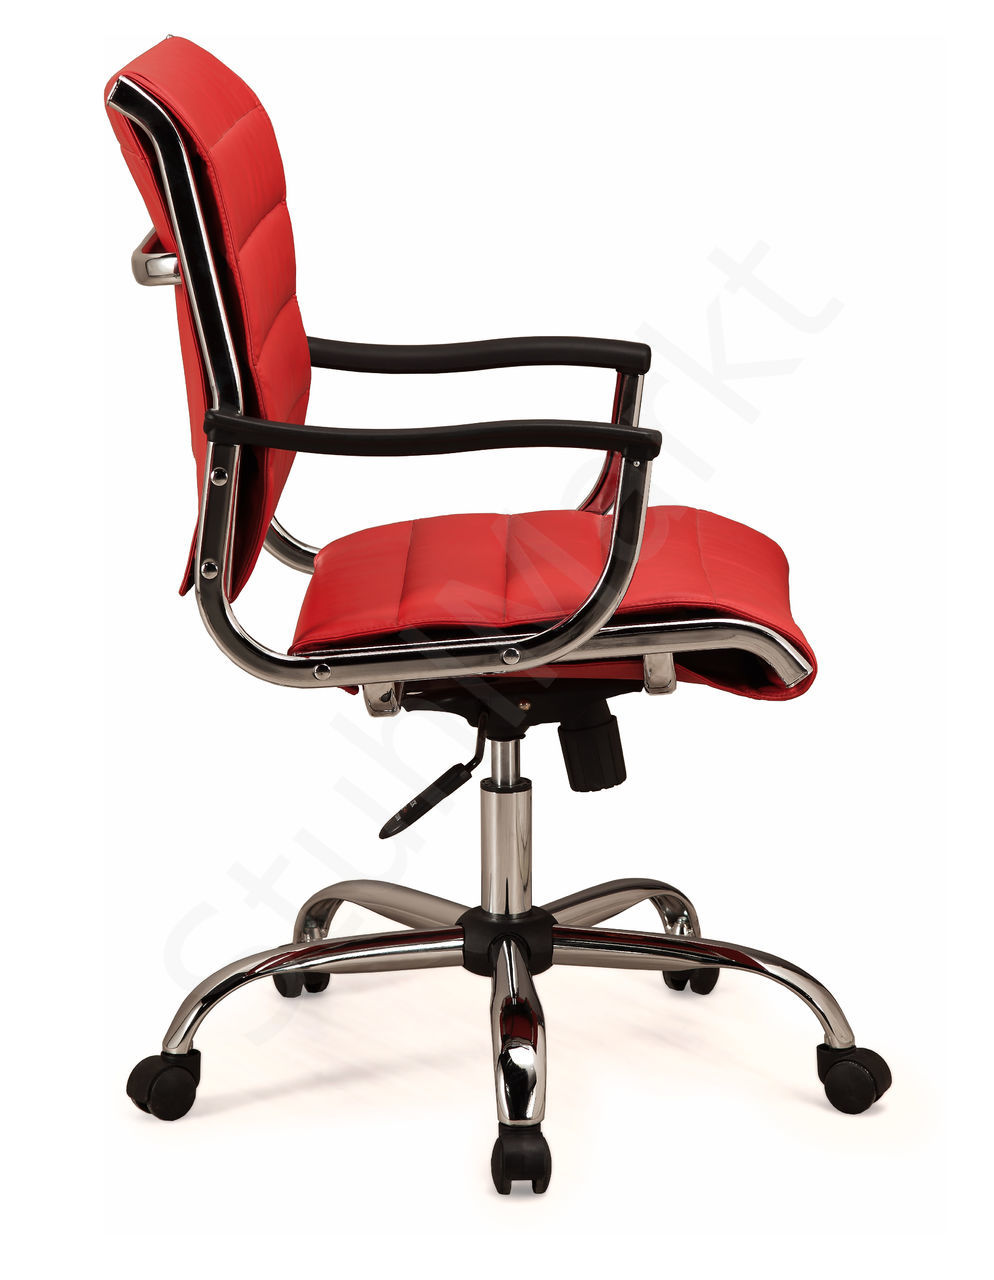 кресло офисное кресло ch 994